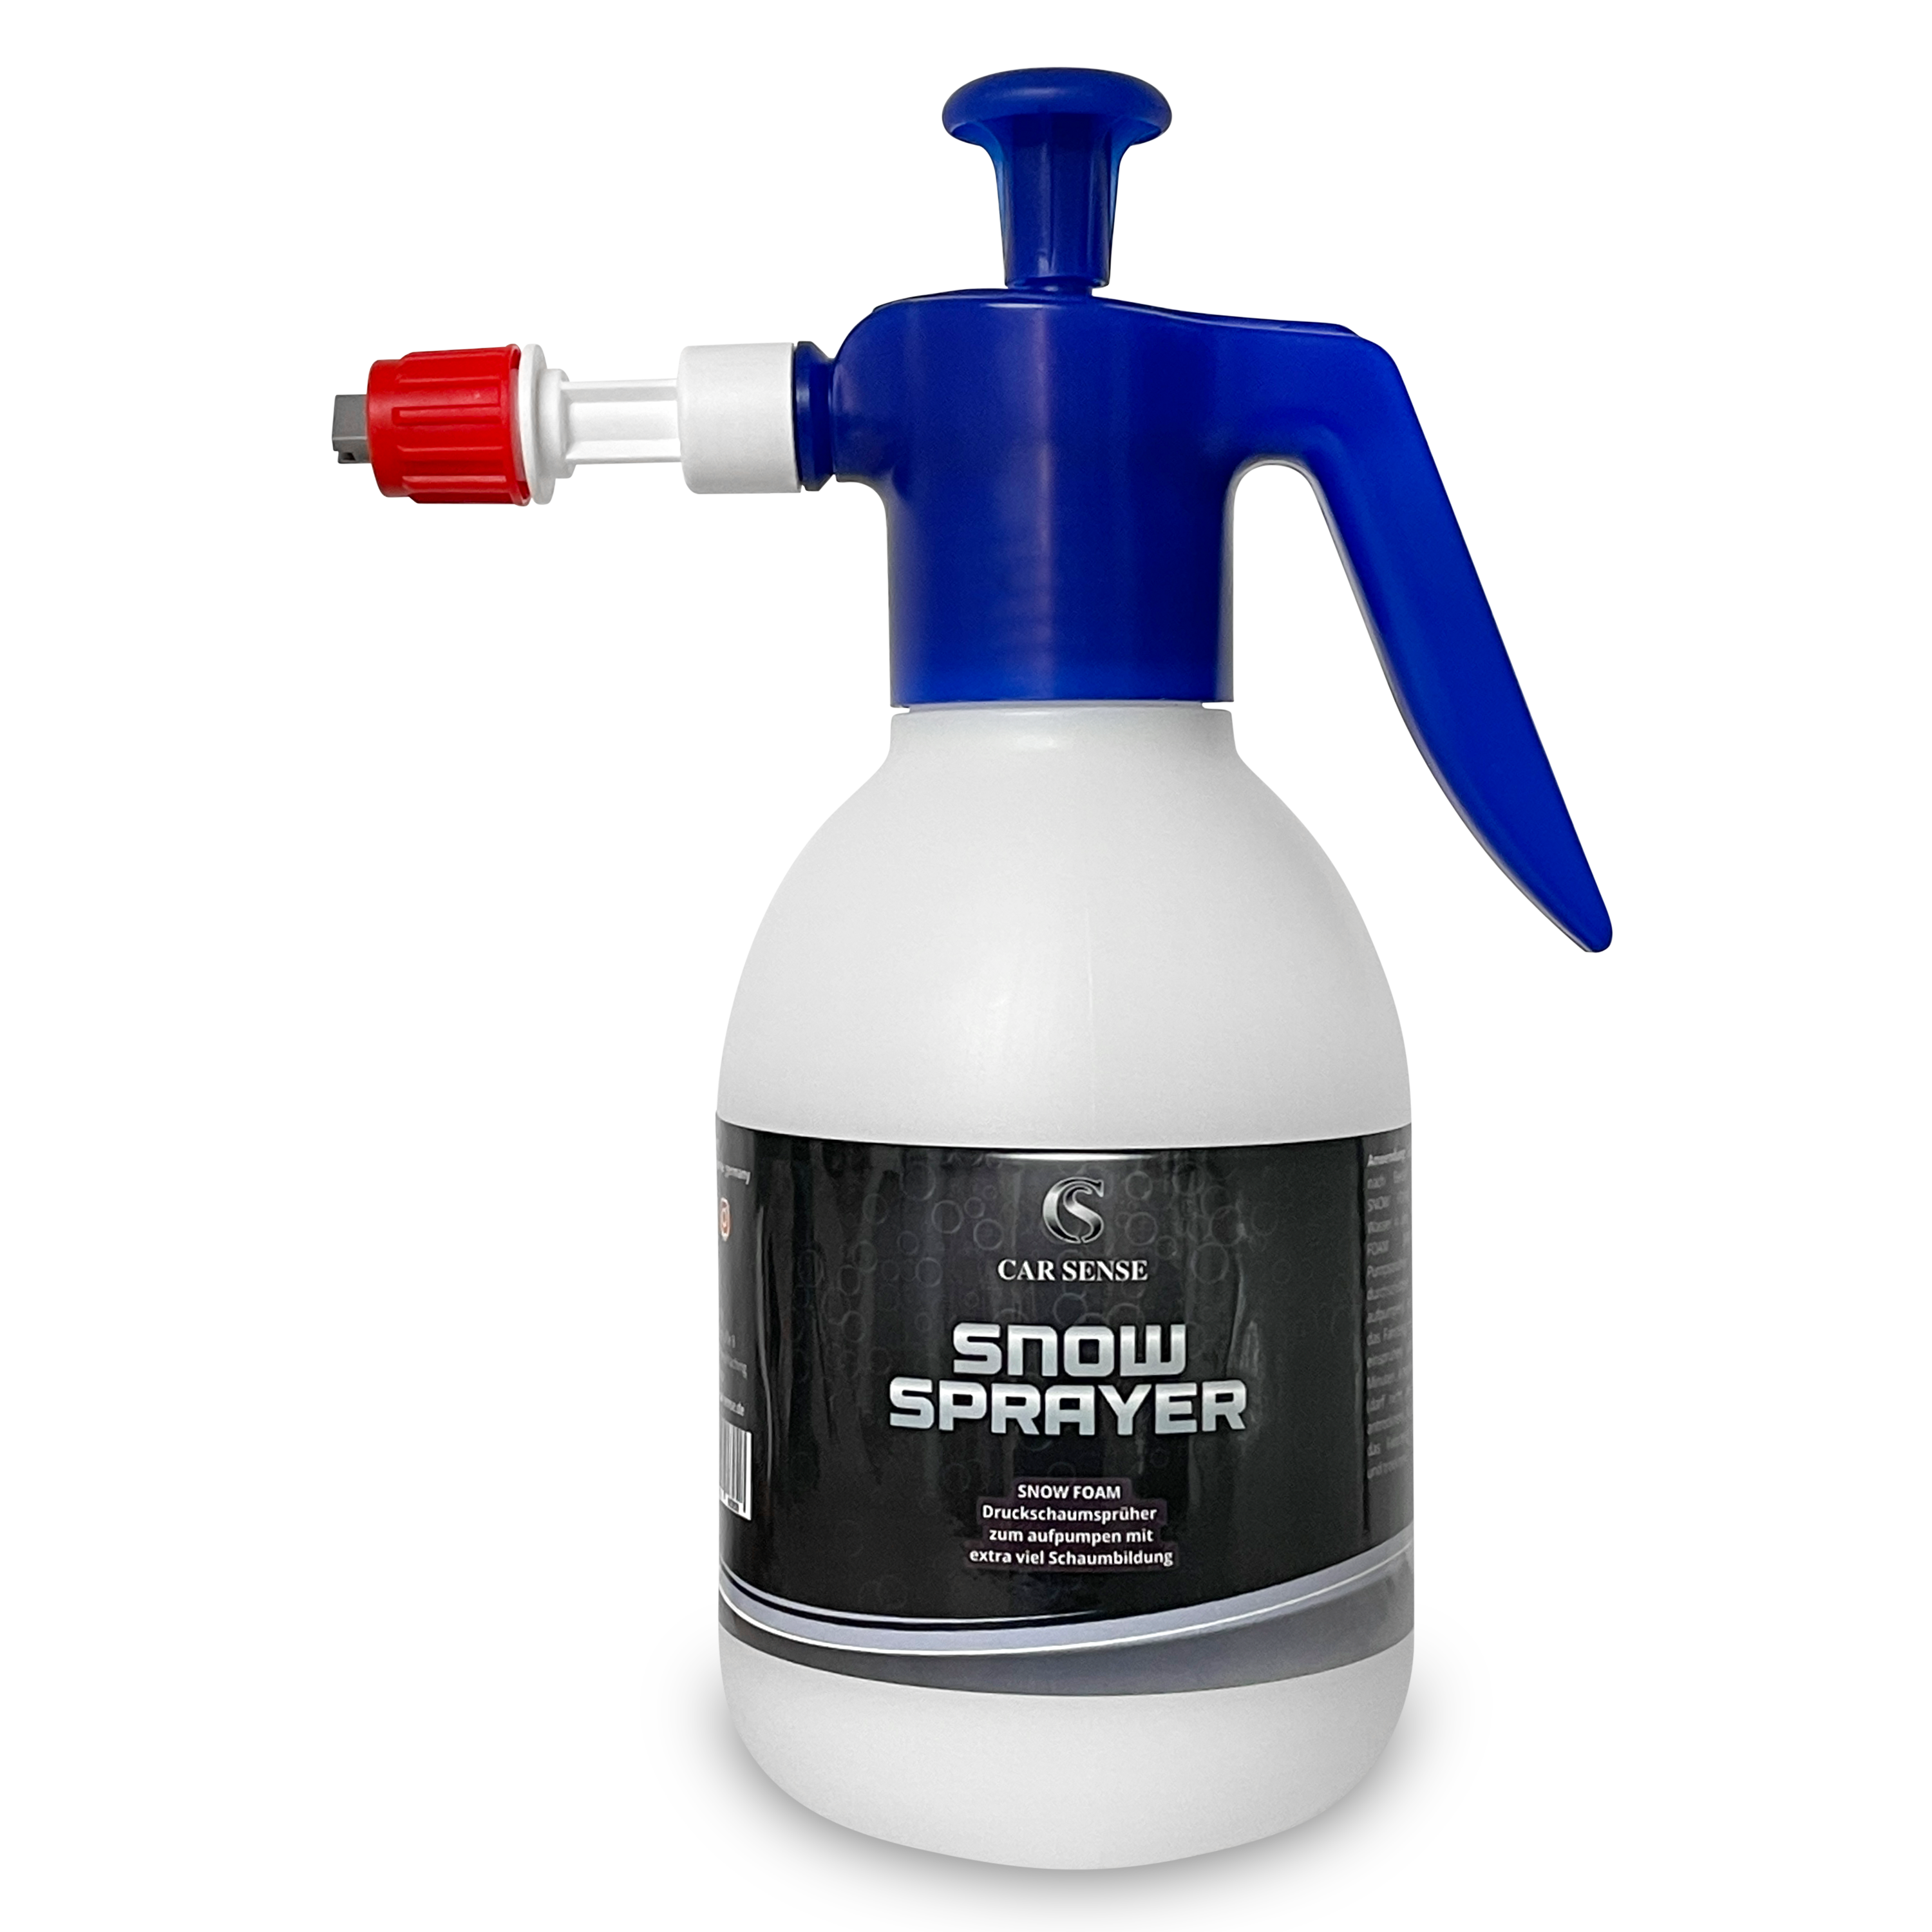 Car Sense Snow Sprayer Pumpflasche der Car Sense Schaum-Druckschaumsprüher